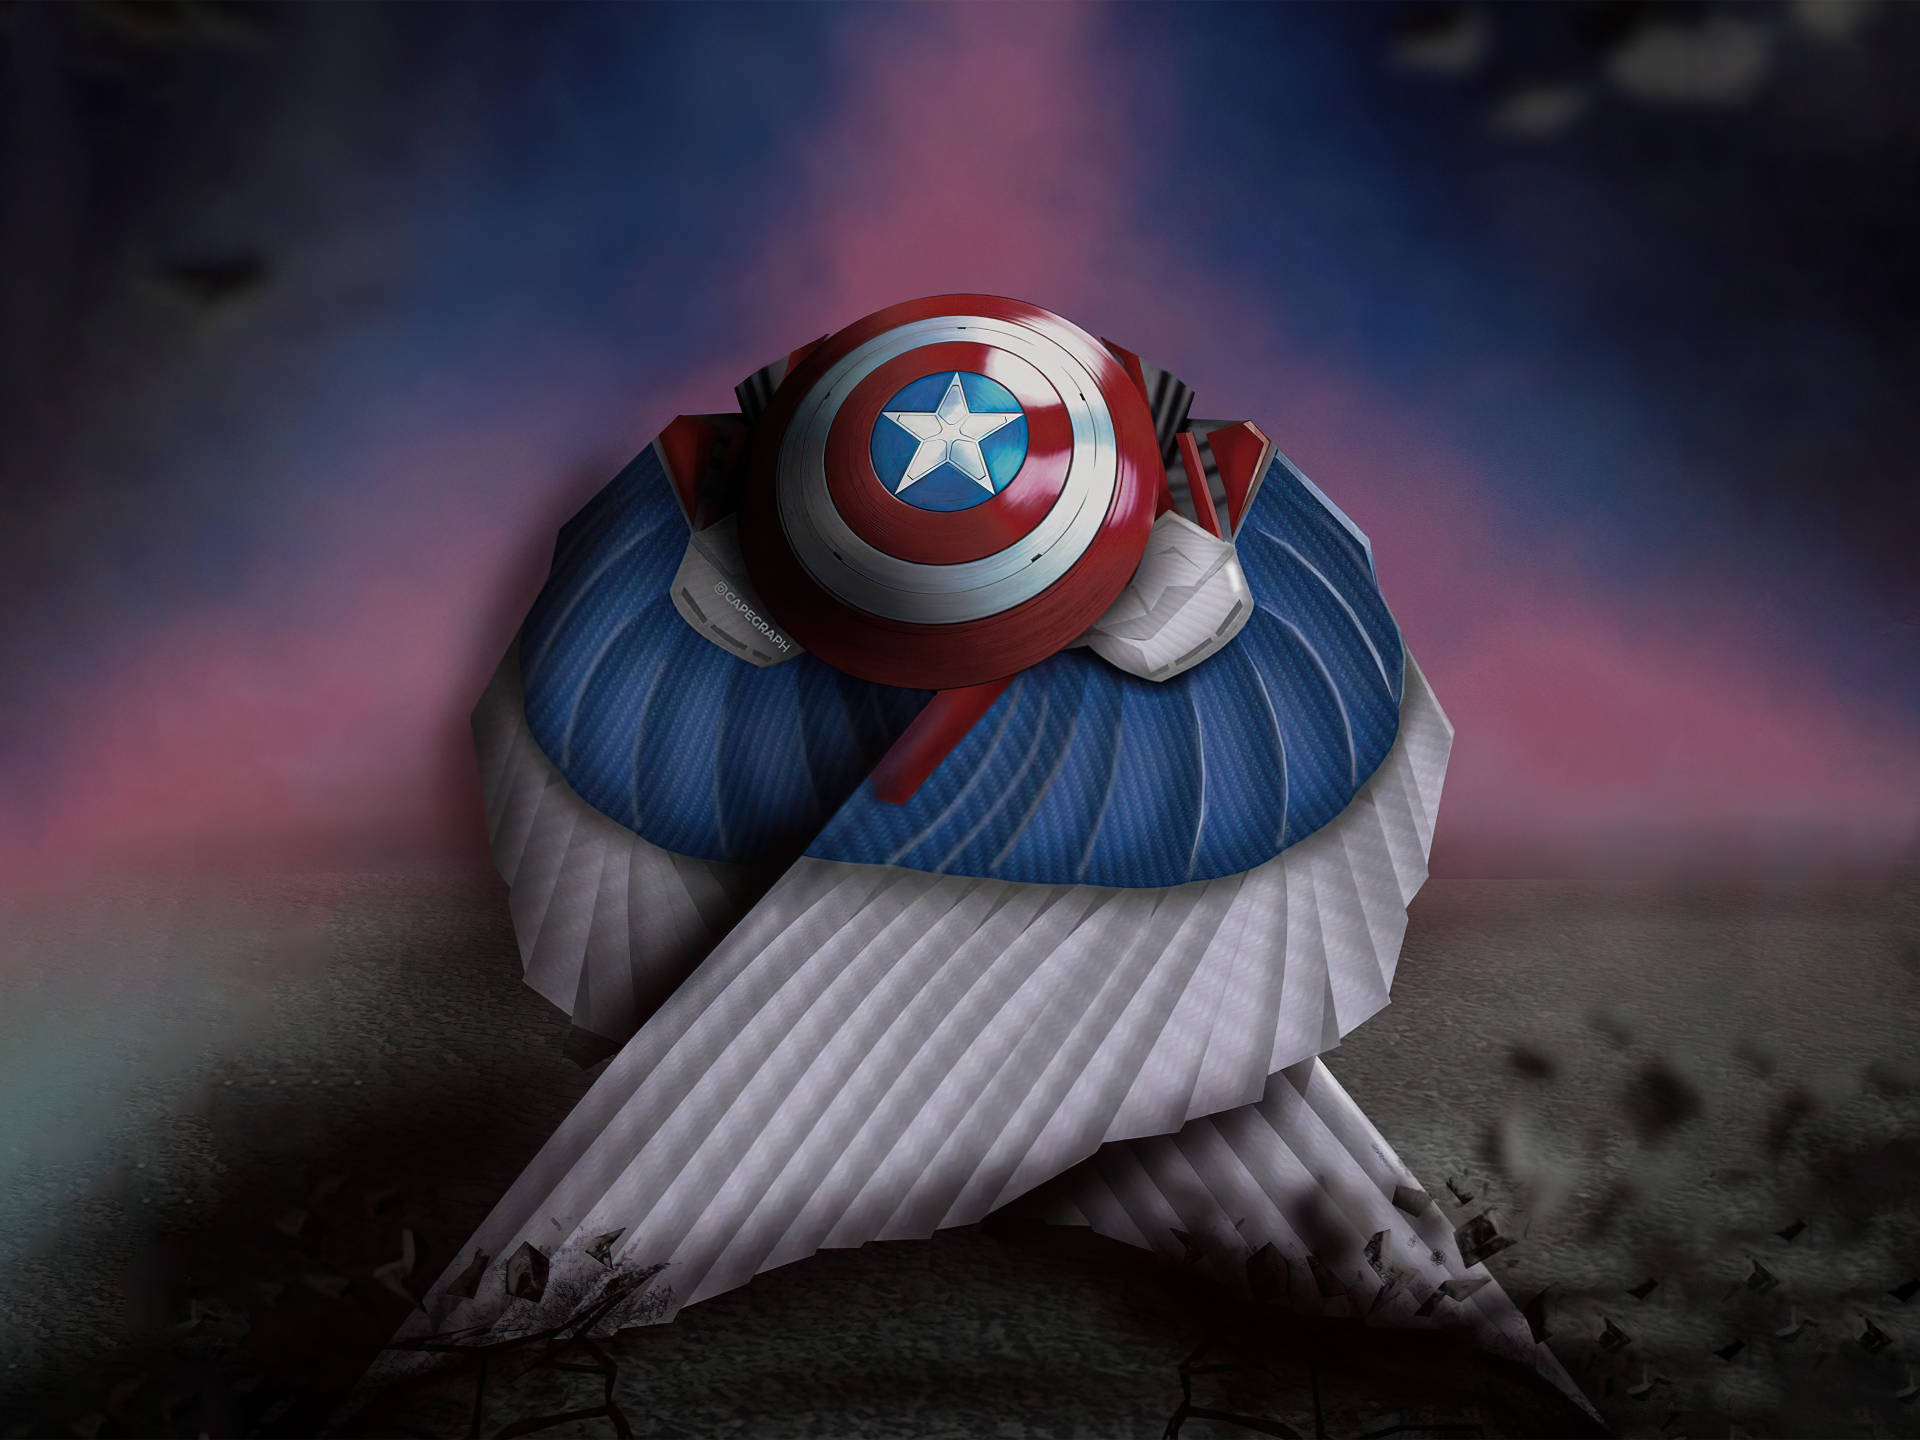 Varden Bästa Captain America Du Kan Vara På Din Dators Eller Mobilens Bakgrundsbild. Wallpaper